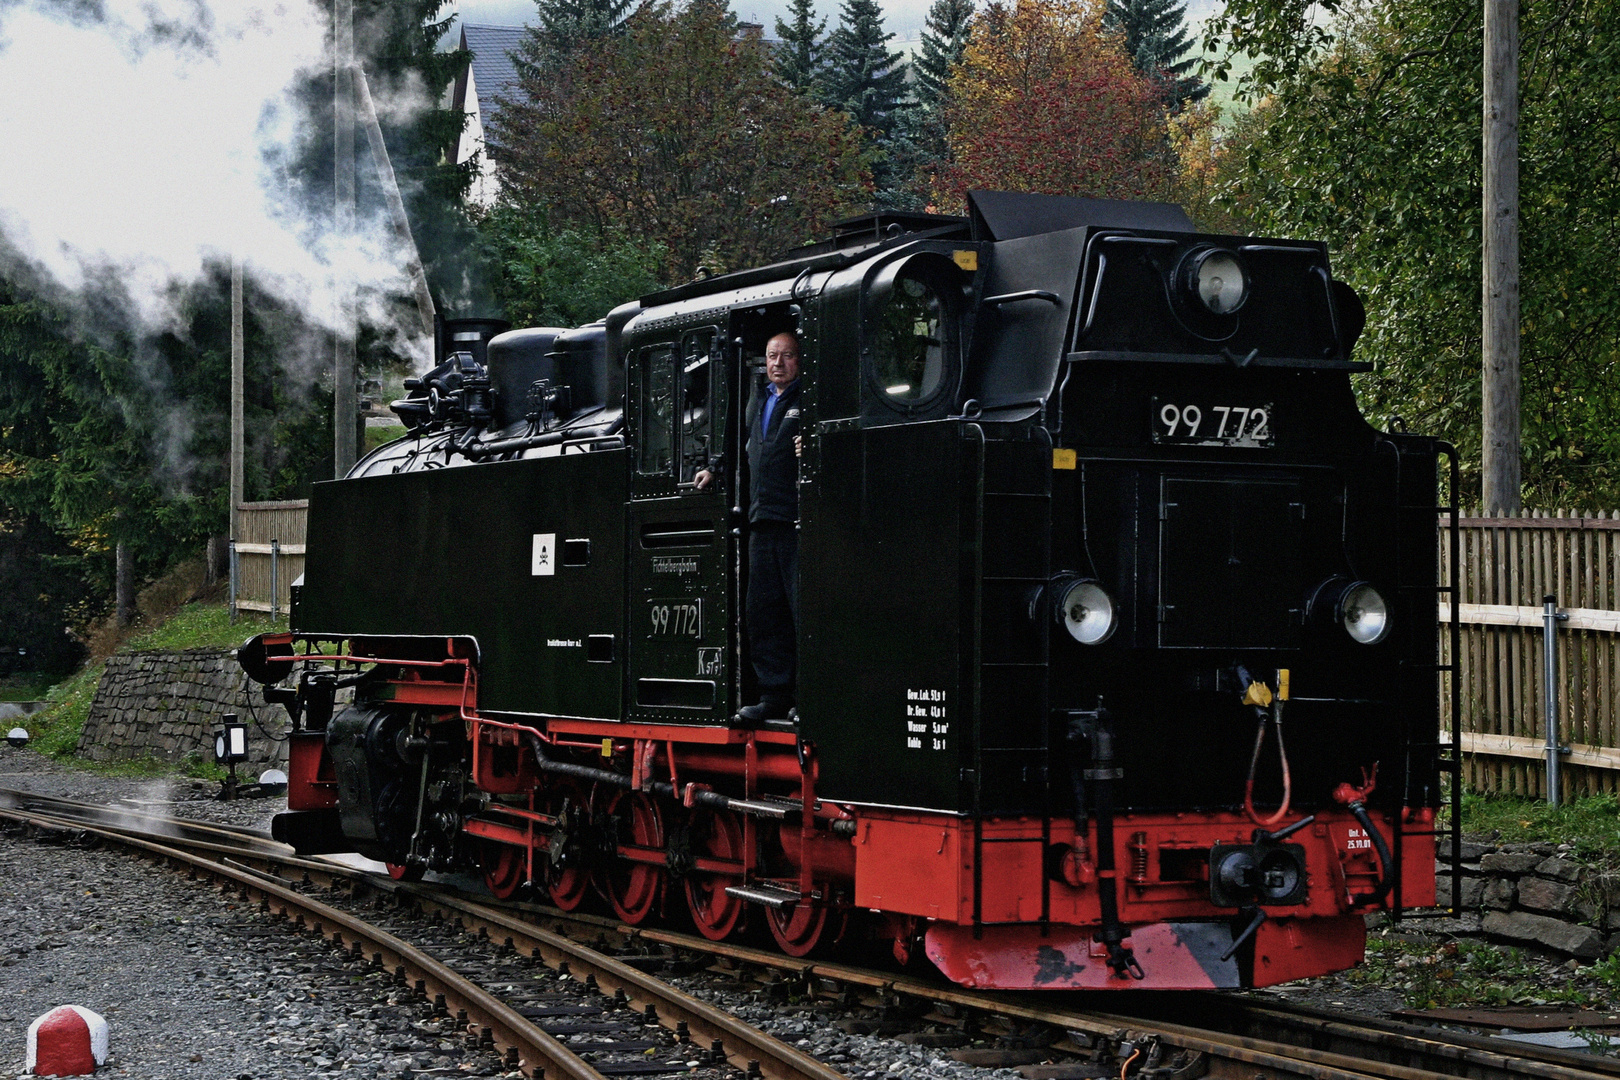 Dampflokomotive 99 772